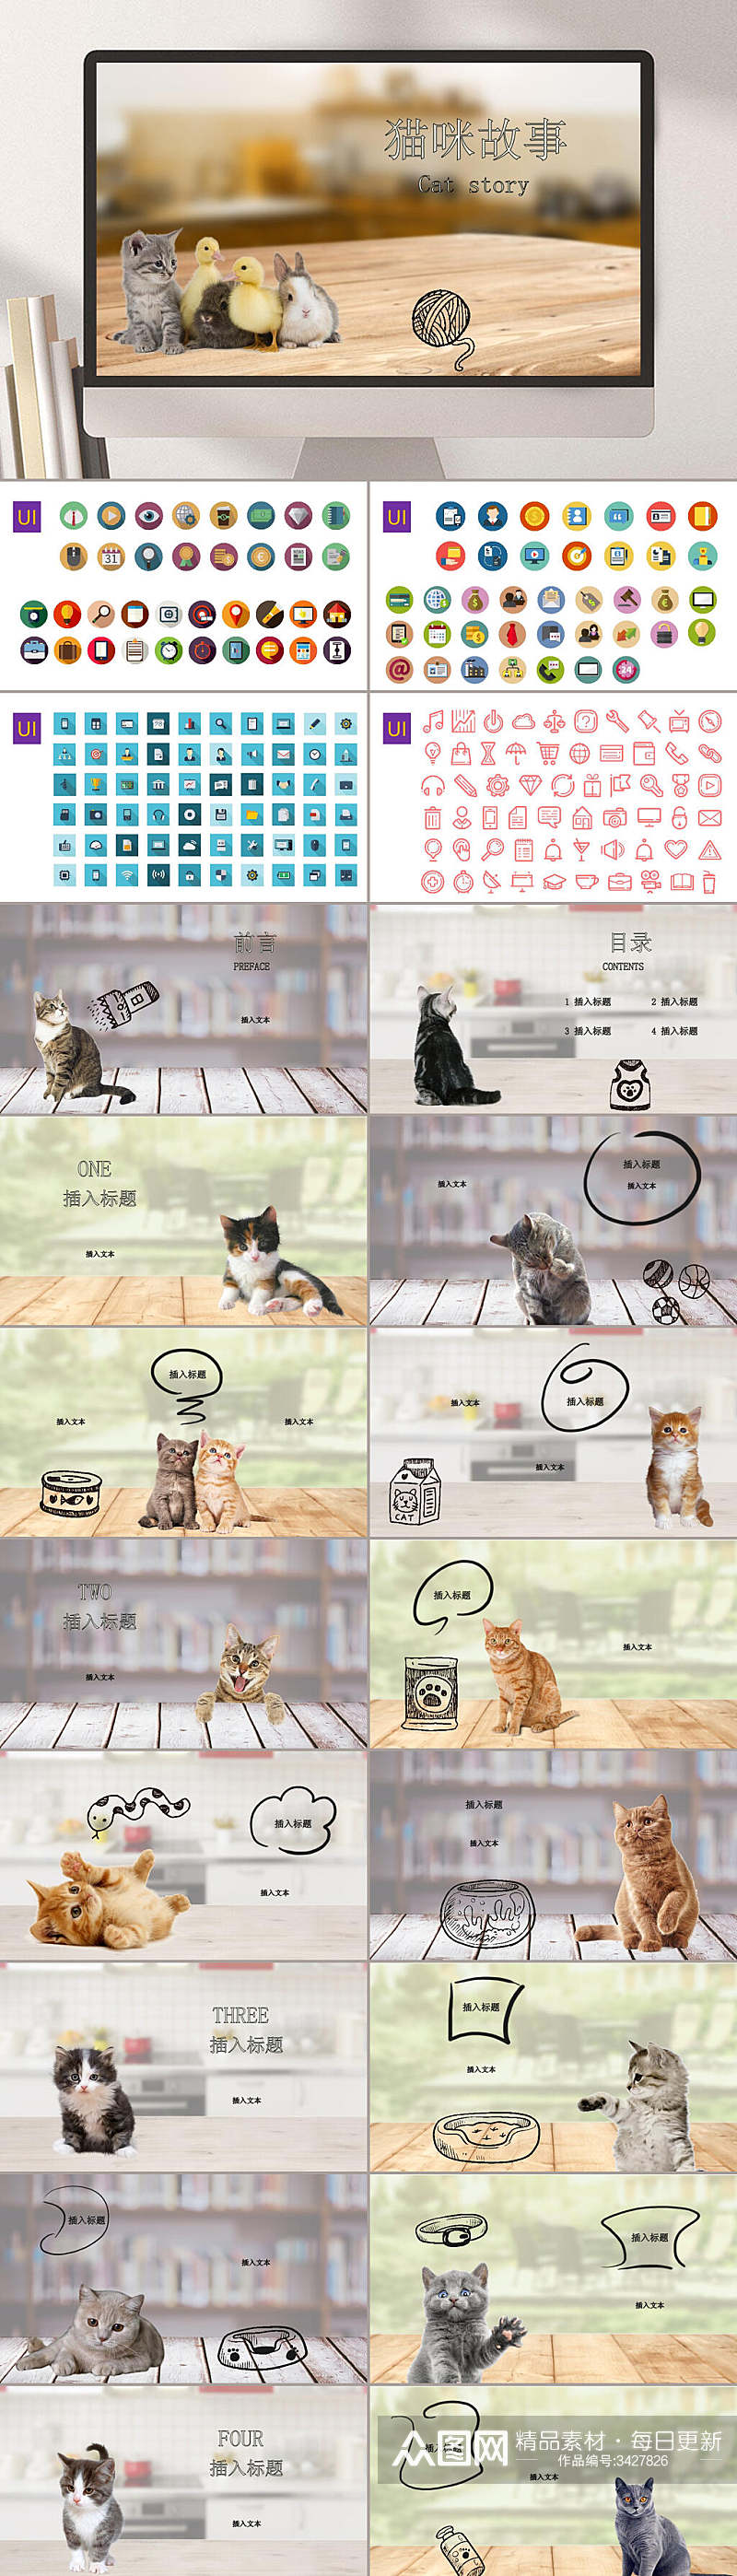 猫咪故事卡通宠物行业PPT素材